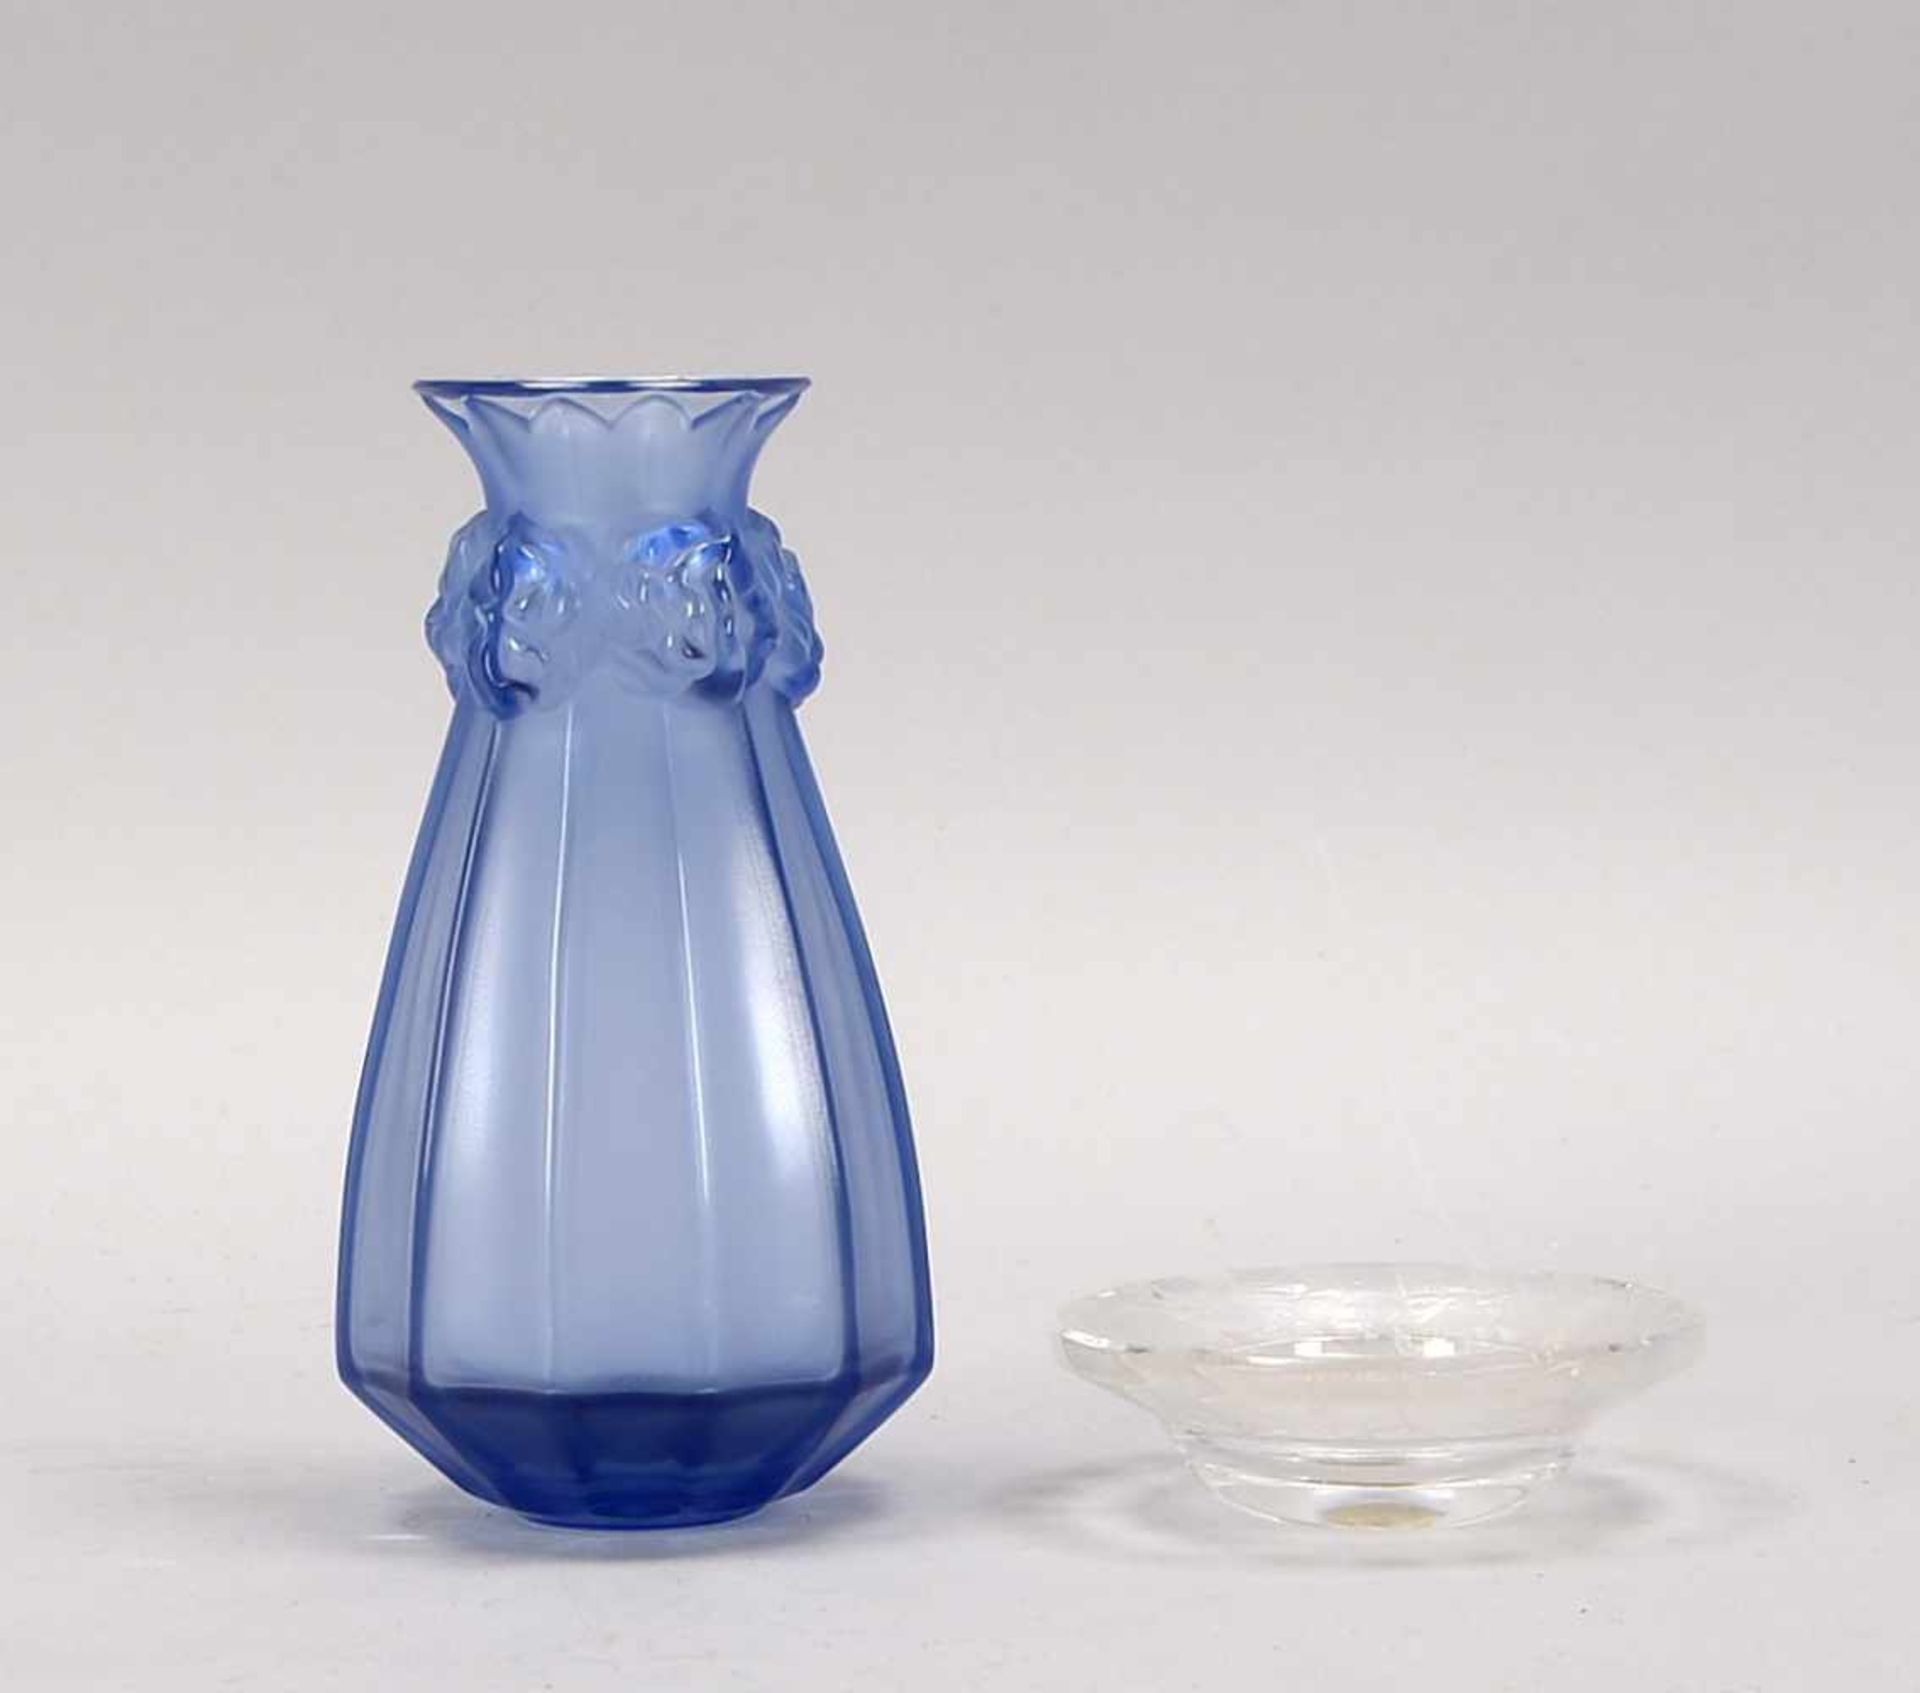 Lalique, 2 Glas-Teile, jeweils mit Bodensignatur: 1 Vase mit 12-passiger Wandung, blaues Glas,